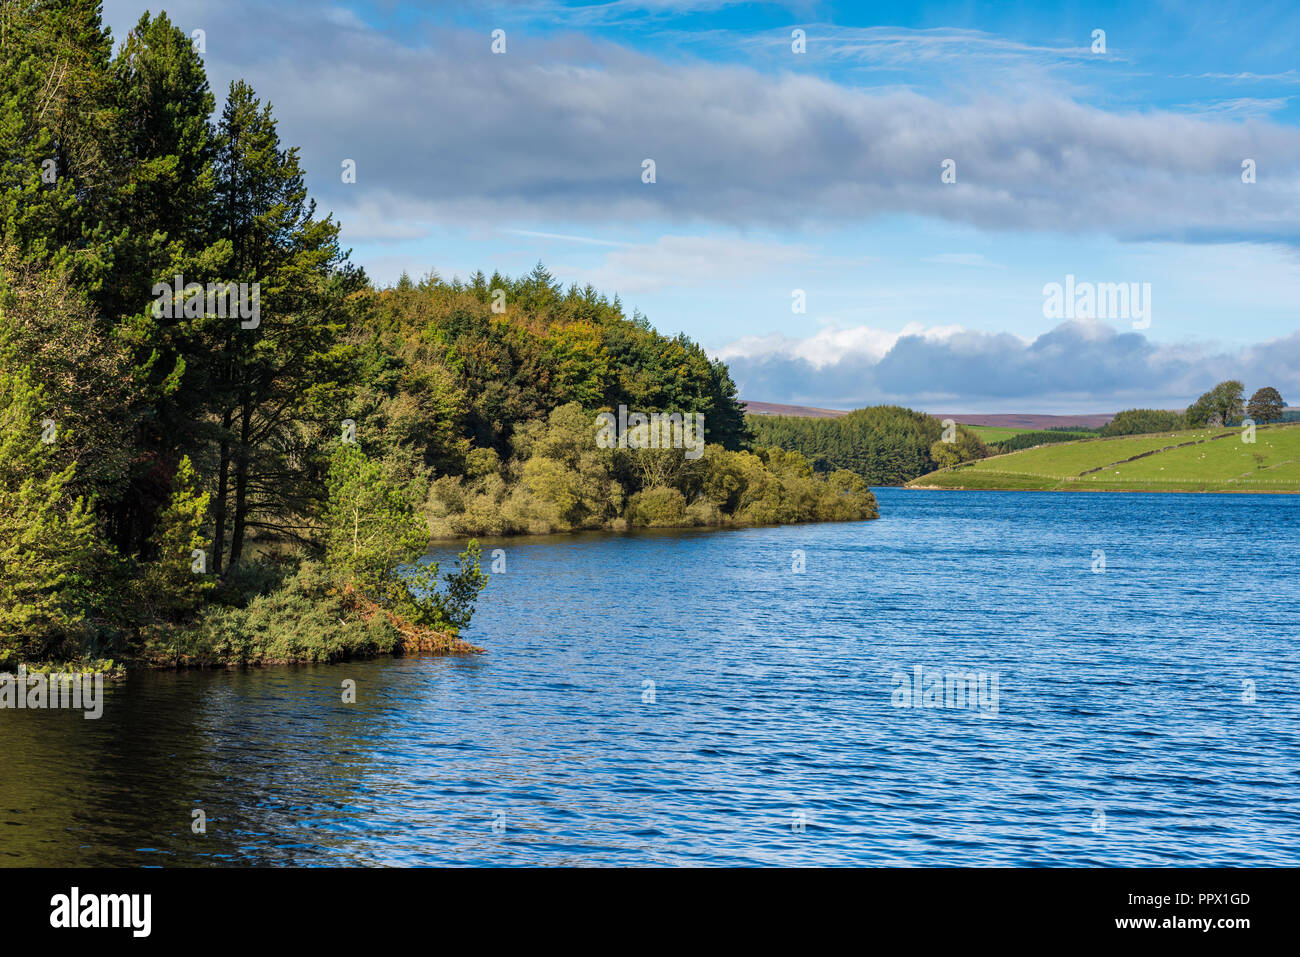 Paysage panoramique vue sur Thruscross avec réservoir woodland ensoleillée au bord de l'eau, sous ciel bleu - Washburn Valley, North Yorkshire, Angleterre, Royaume-Uni. Banque D'Images